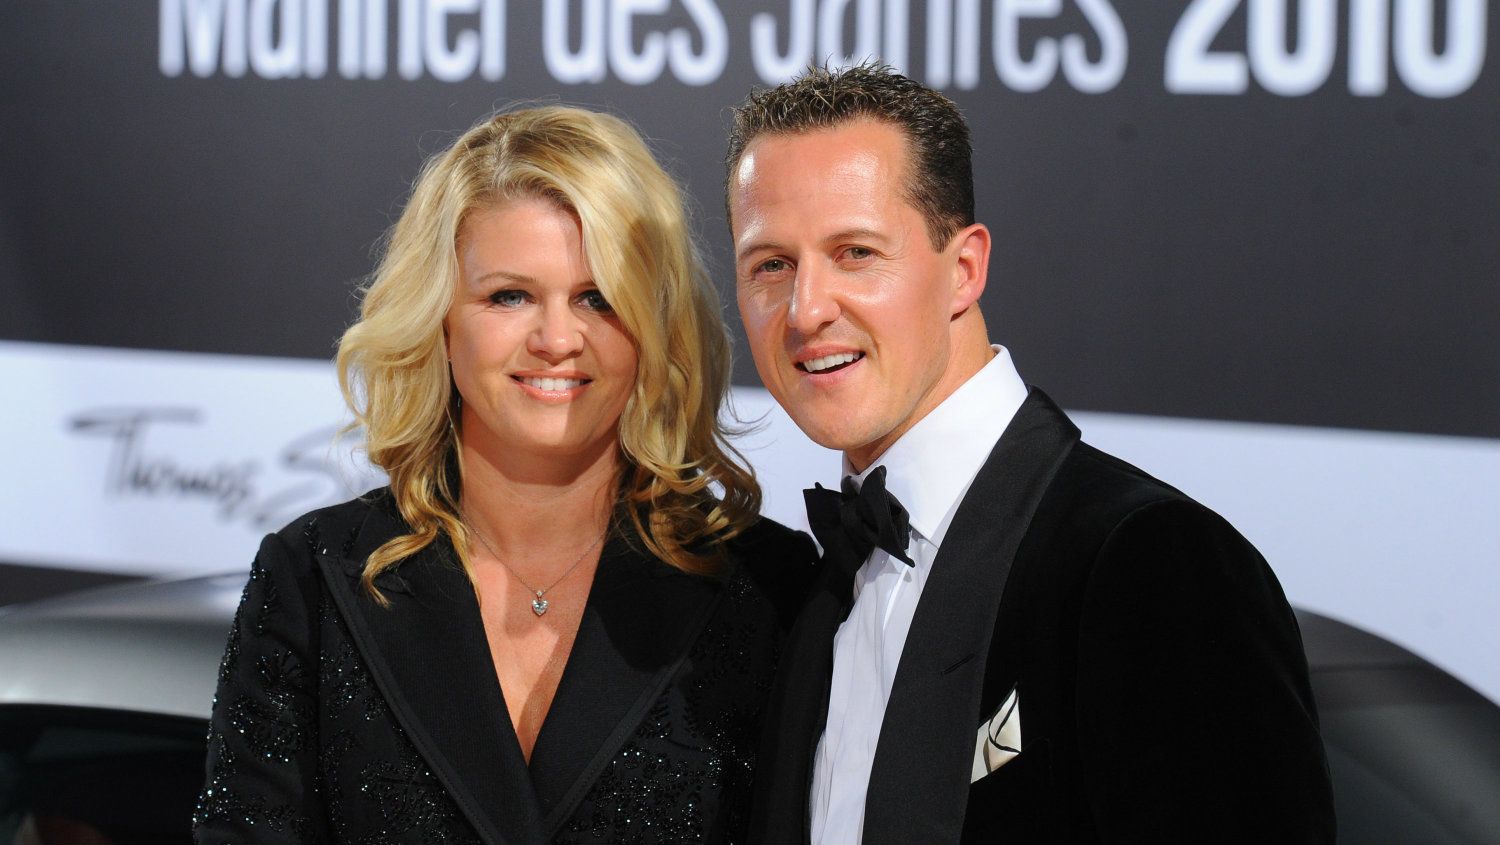 Schumacher feleségének rejtélyes üzenete: A nagy dolgok kis lépéssel kezdődnek